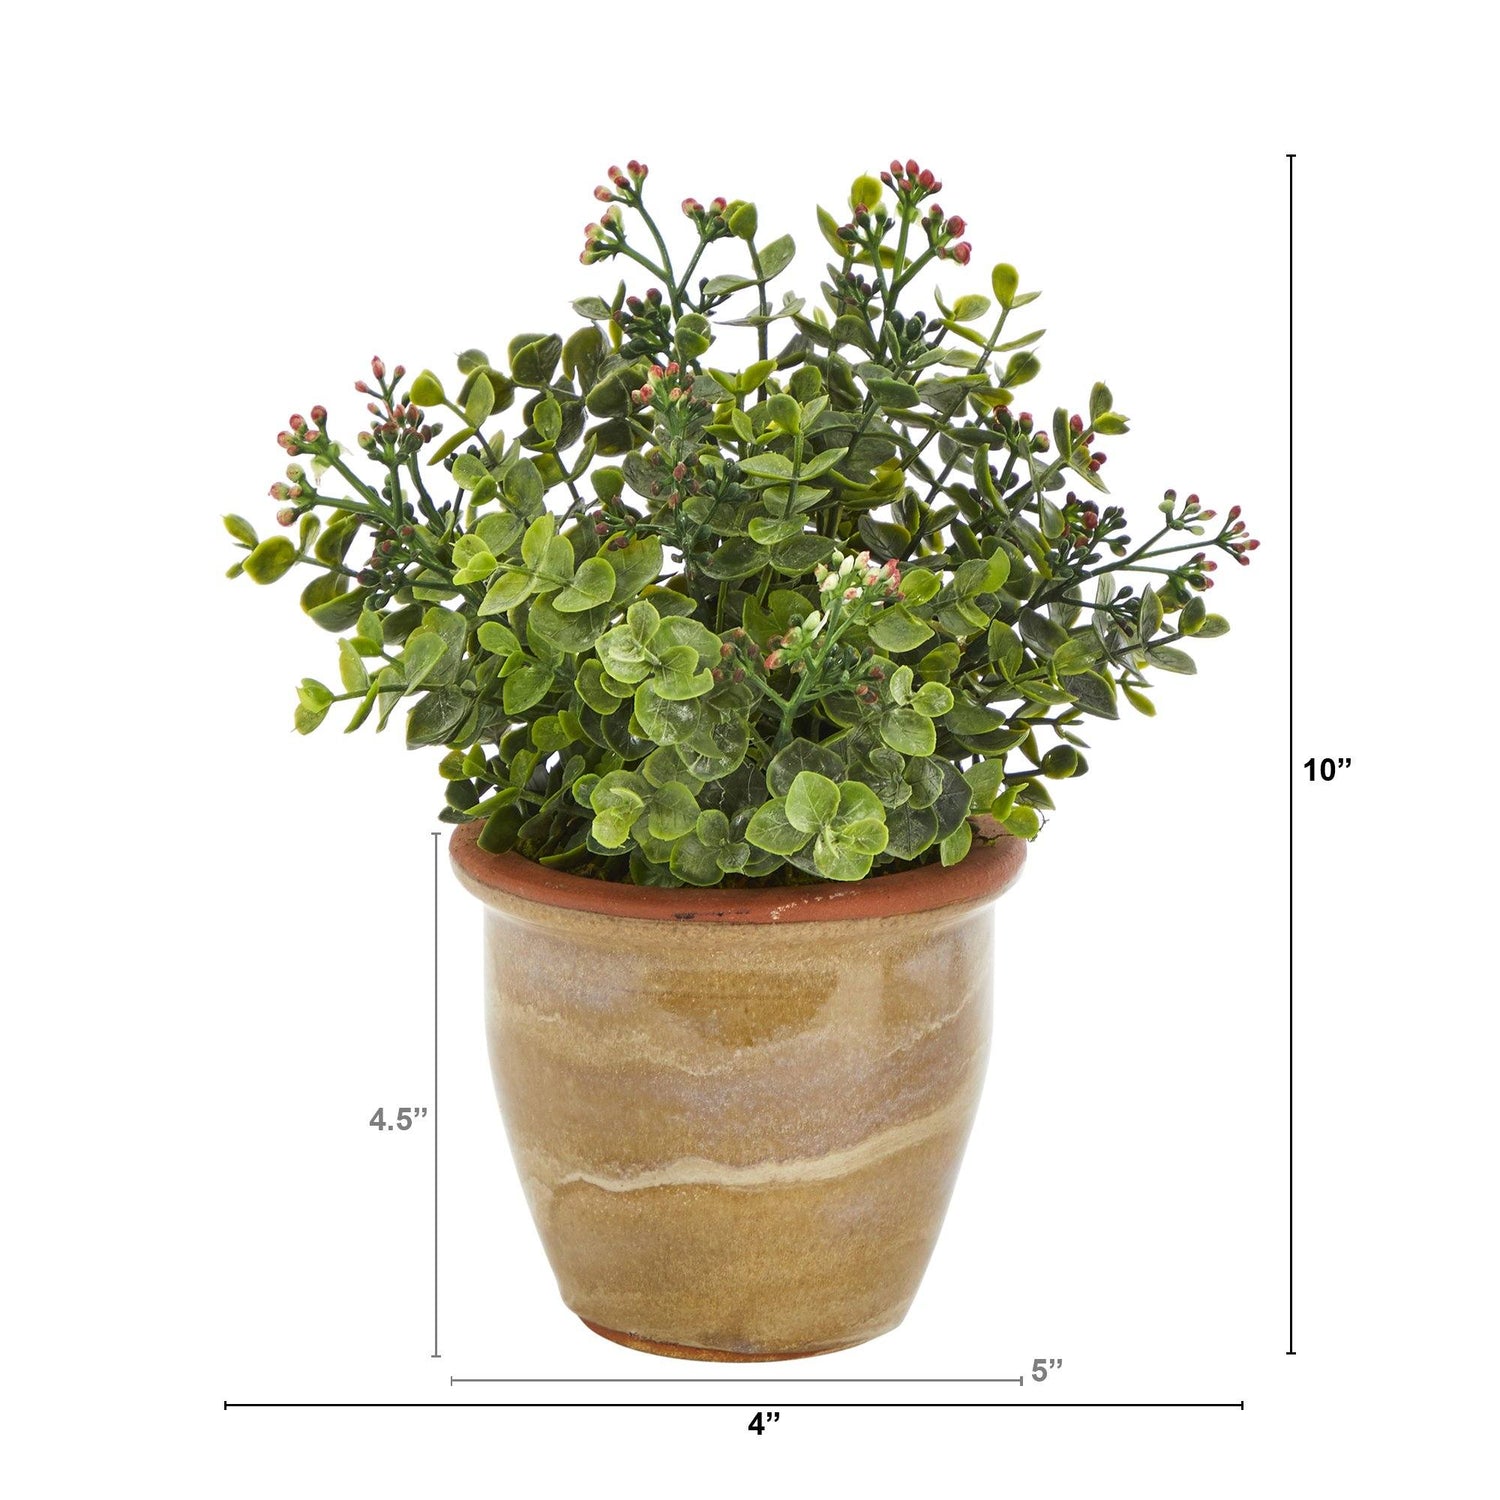 10” Eucalyptus and Sedum Succulent Artificial Plant in Ceramic Planter